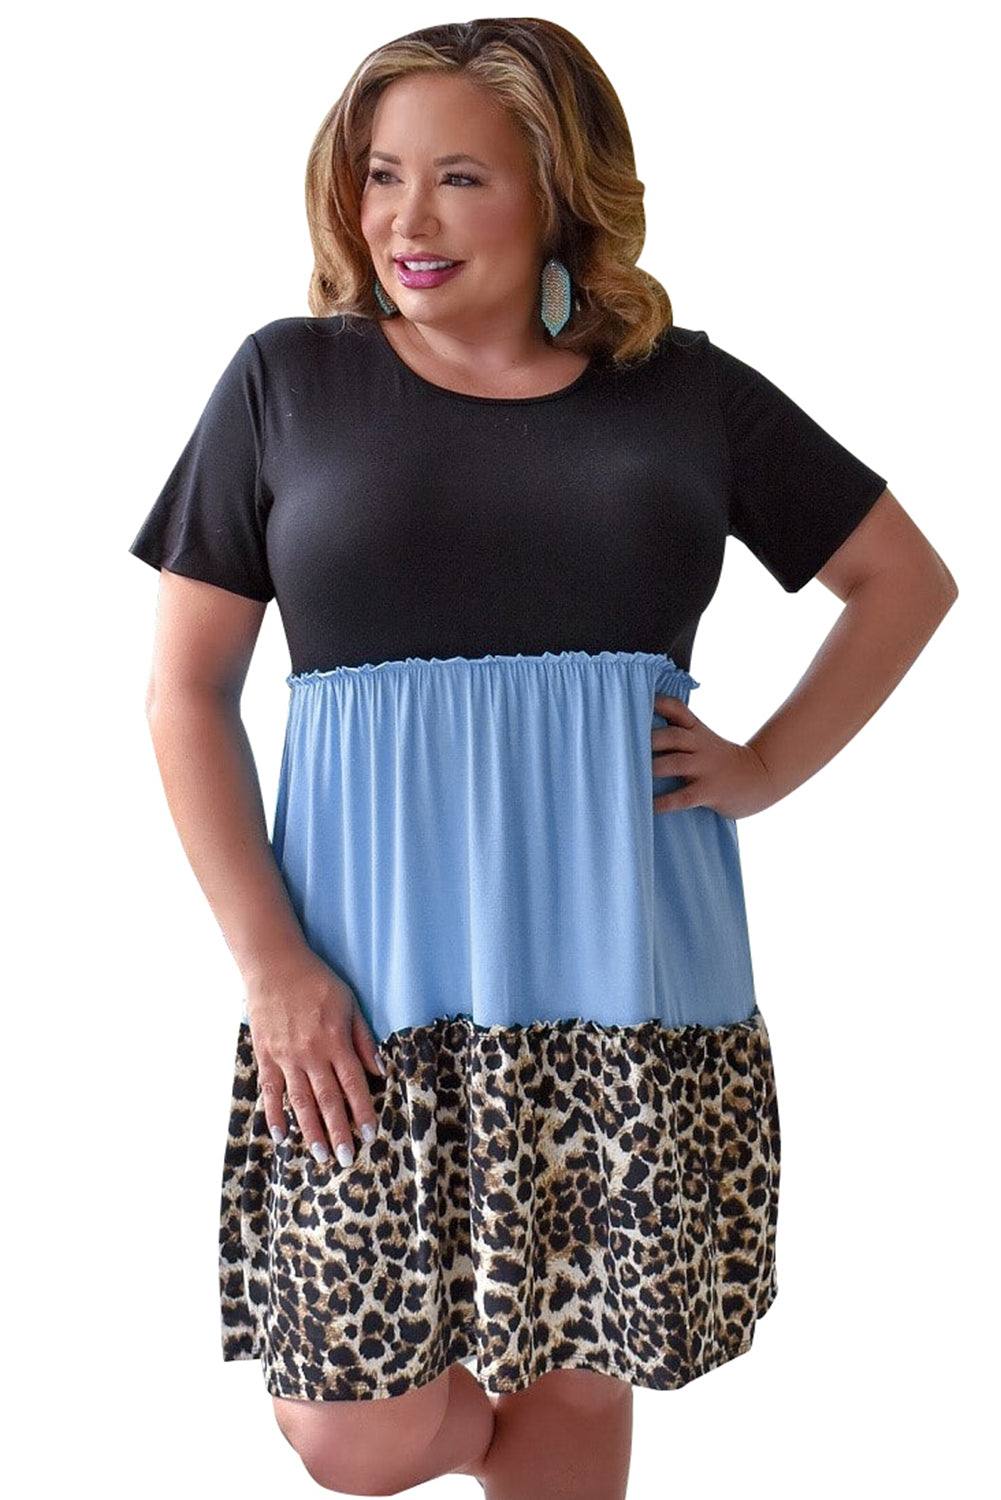 Sky Blue Colorblock Leopard Patchwork T Shirt Plus Size Dress Plus Size Dresses JT's Designer Fashion